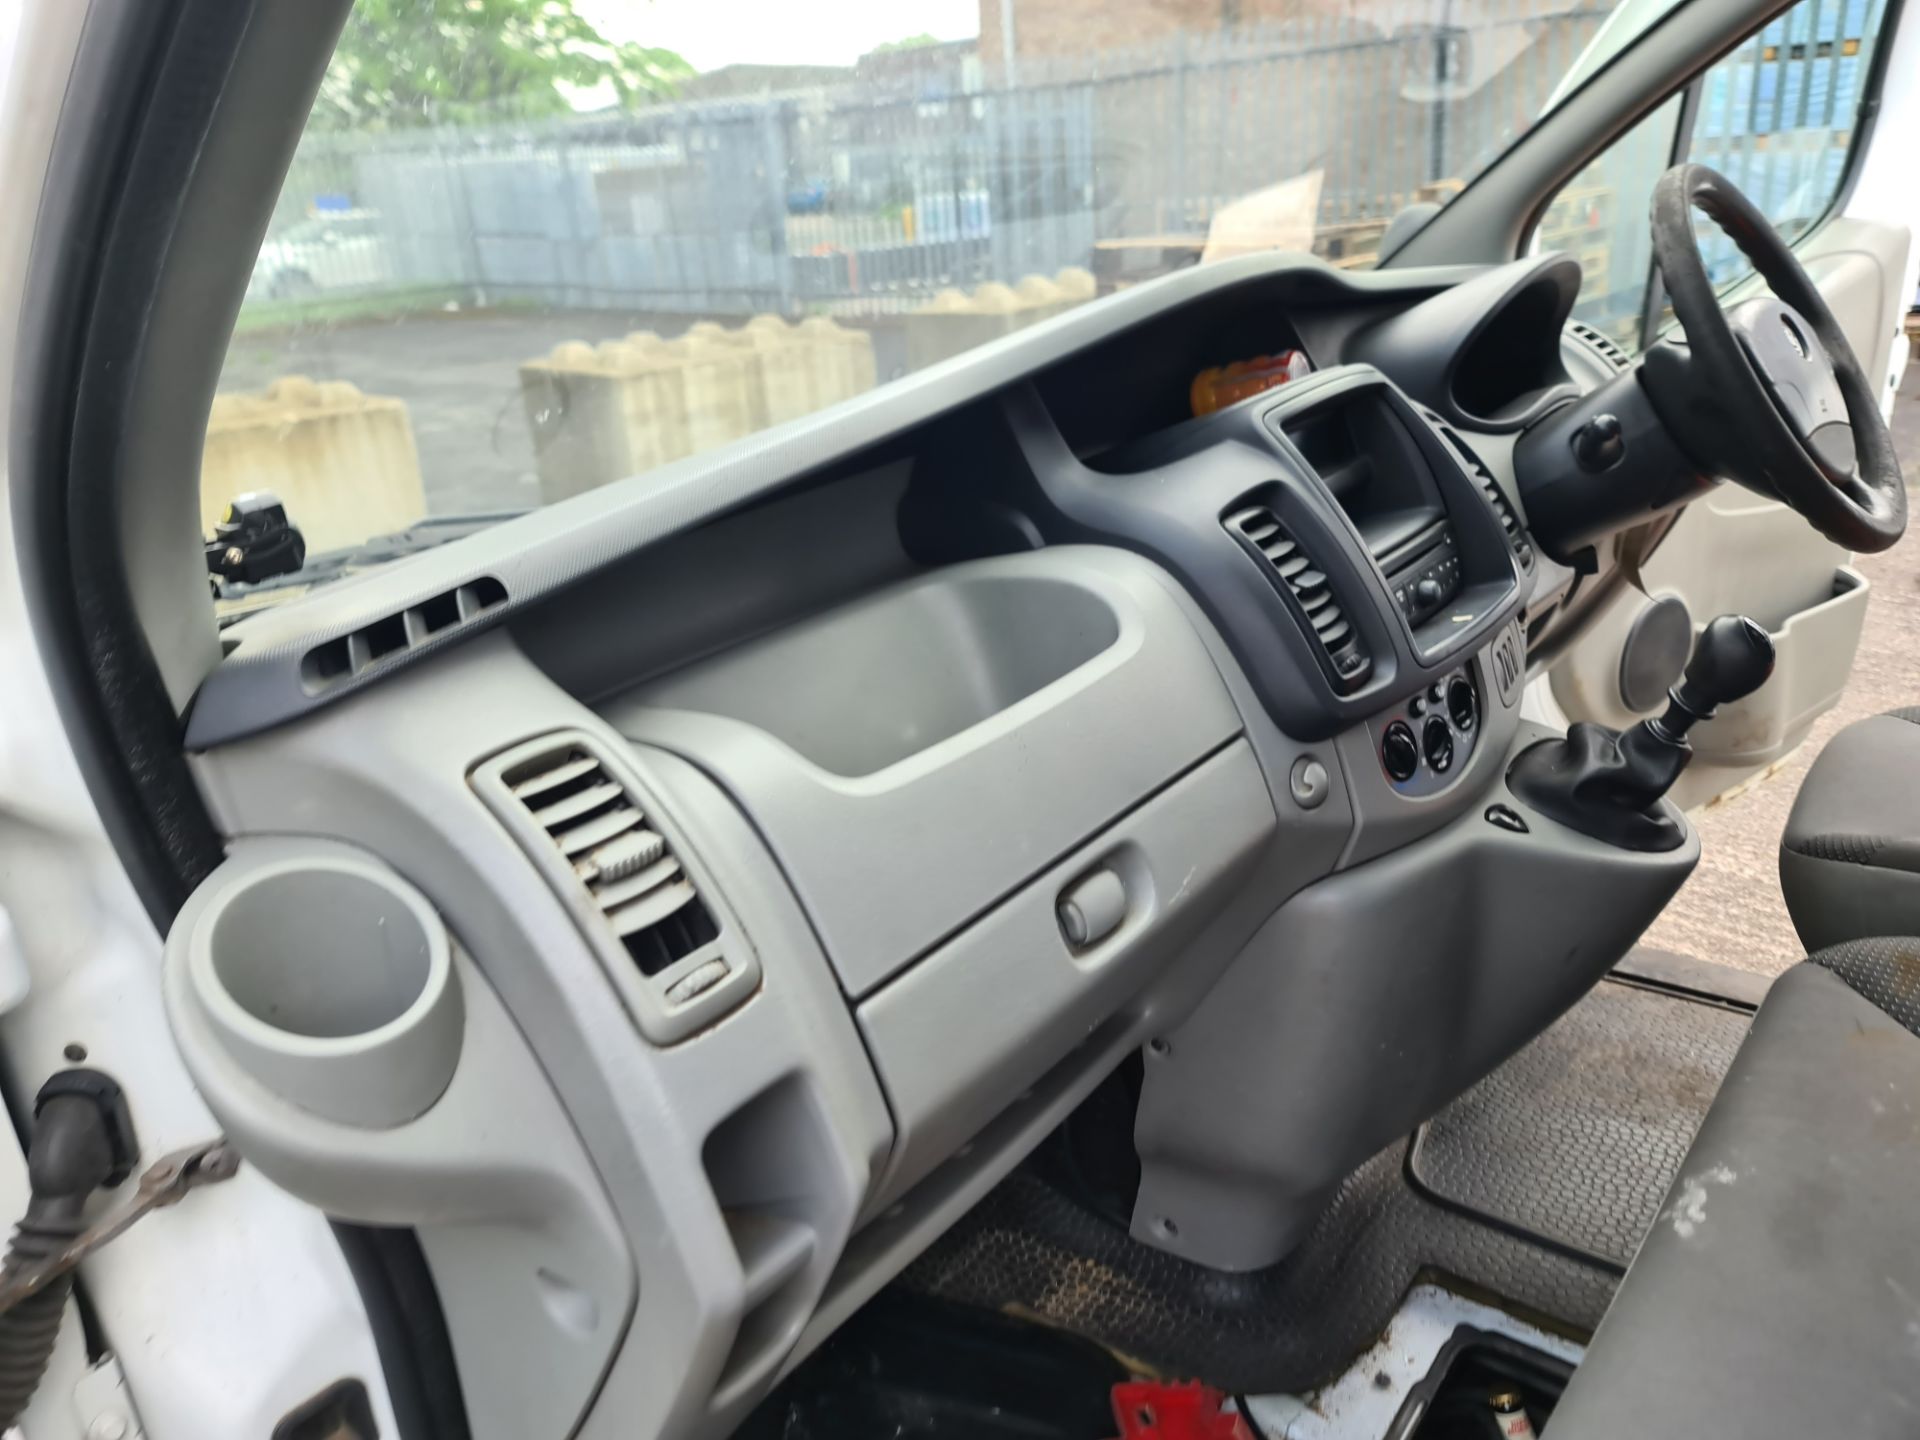 2012 Vauxhall Vivaro 2900 CDTi LWB panel van - Image 72 of 97